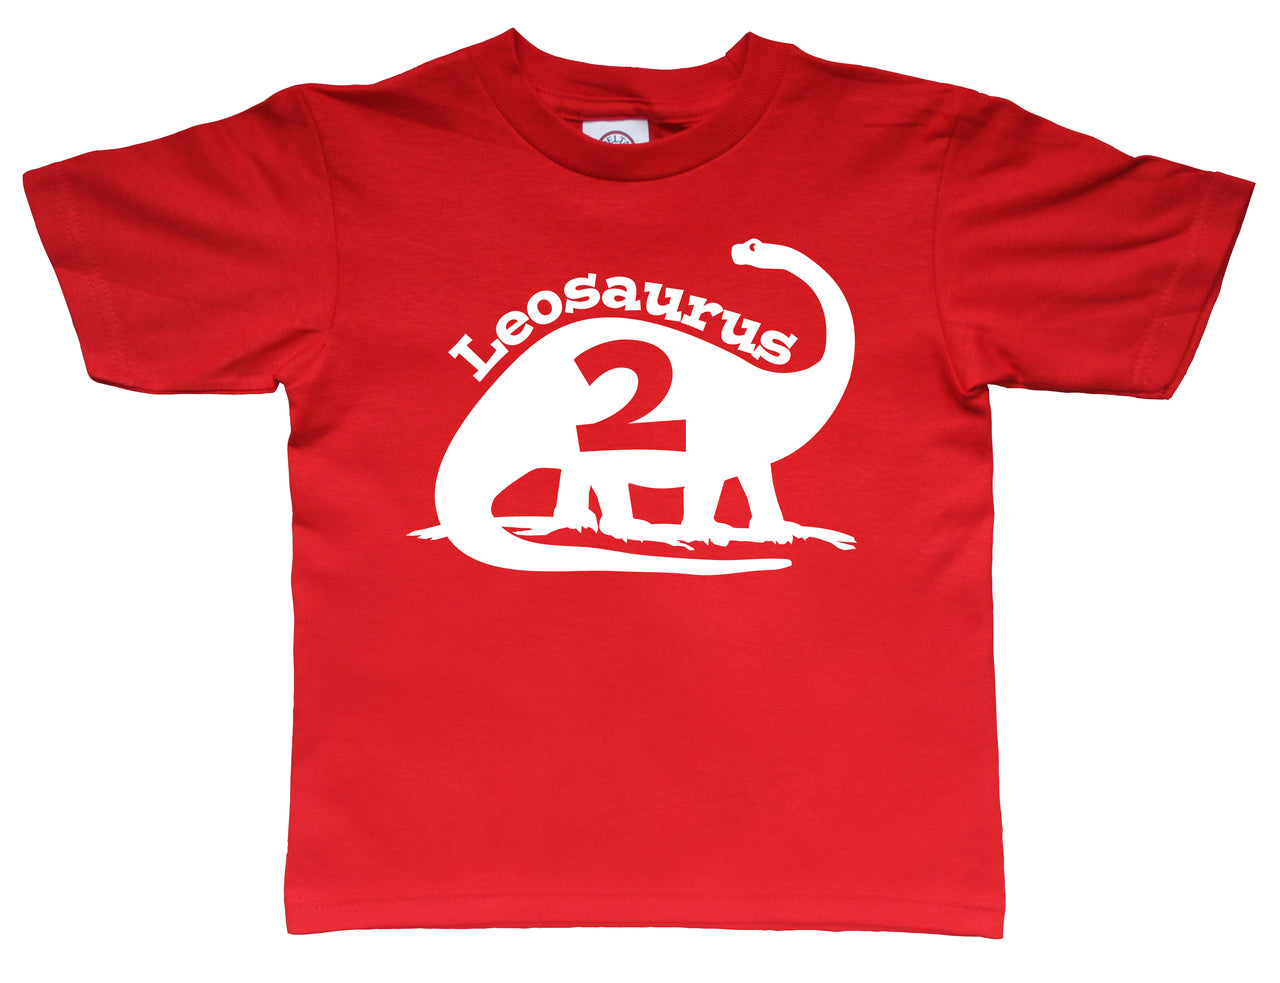 Brontosaurus birthday shirt